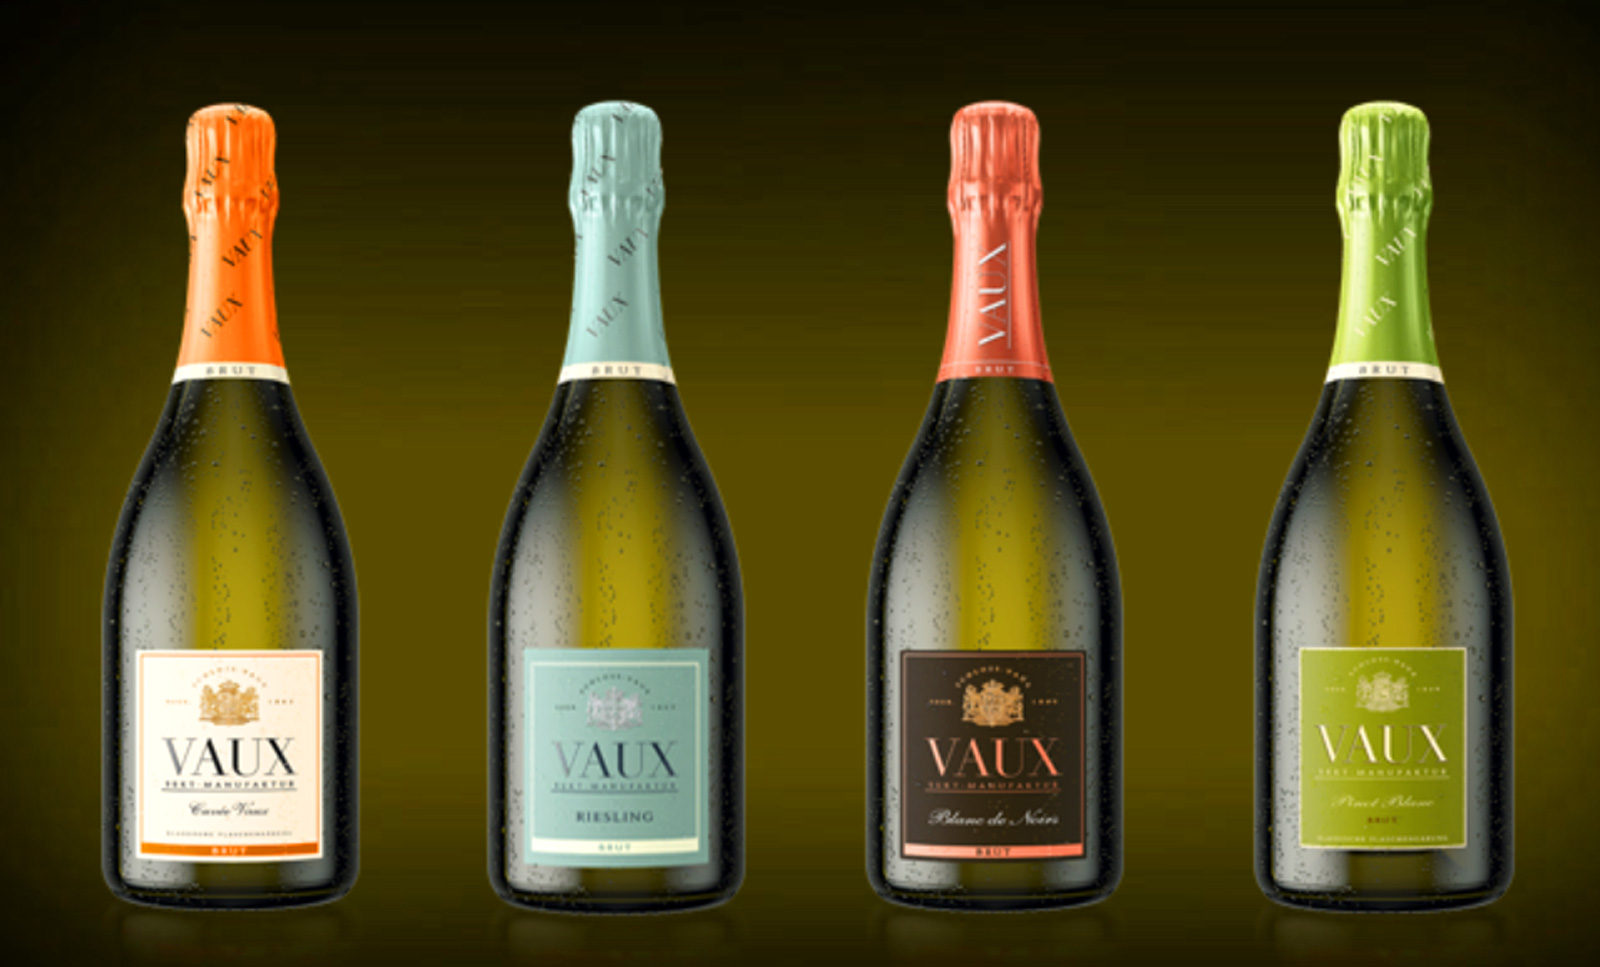 CHAMPAGNESLOTT VAUX Alle VAUX musserende viner er produsert etter den tradisjonelle metoden med klassisk flaskegjaering og er brutdosert.